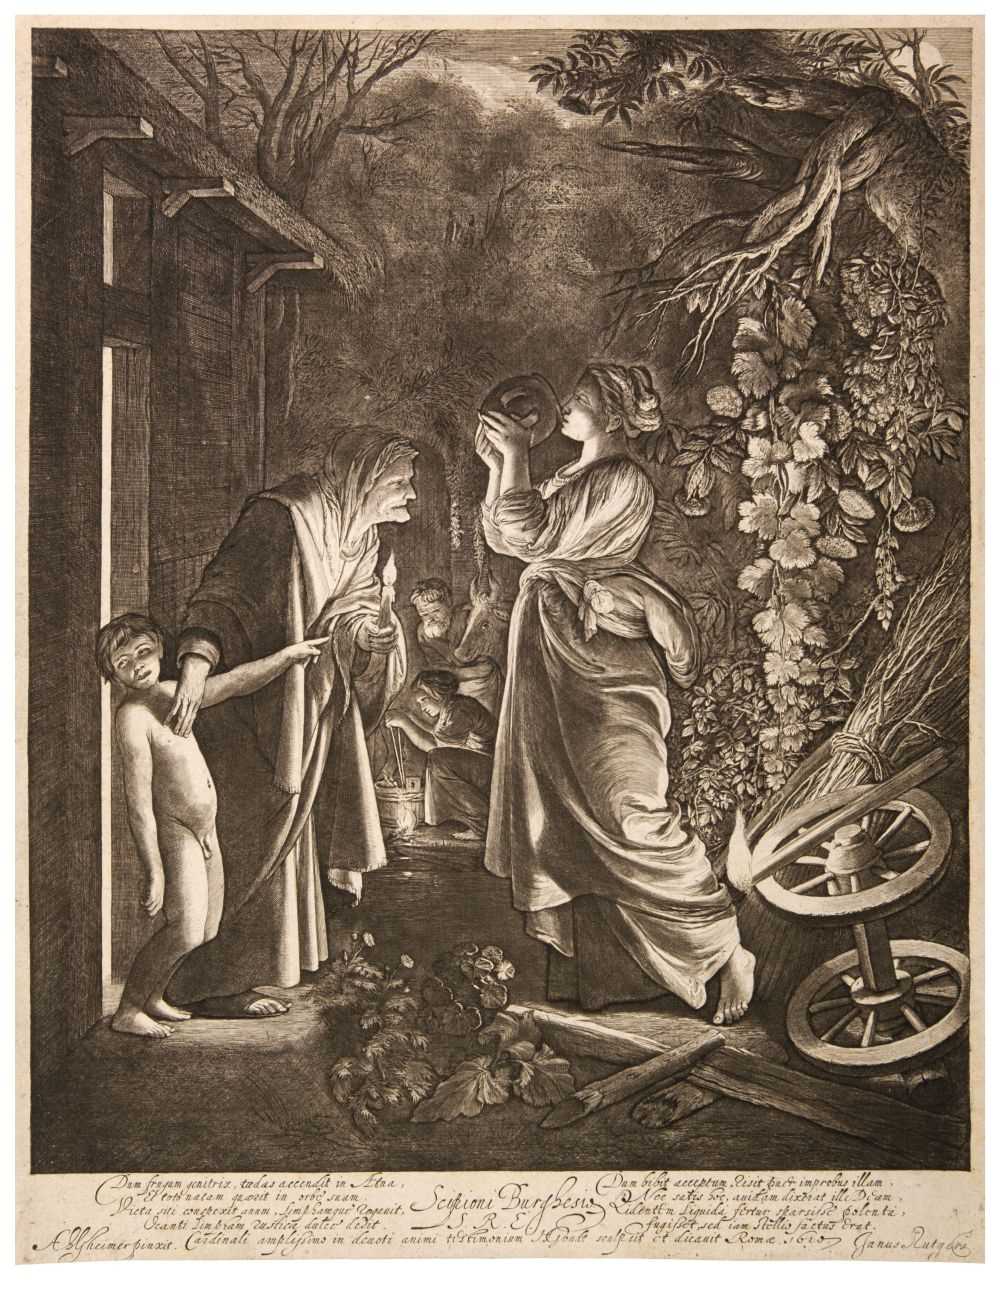 Lot 386 - Goudt (Hendrick, 1582/88-1630/48). Ceres seeking her Daughter, after Adam Elsheimer, 1610